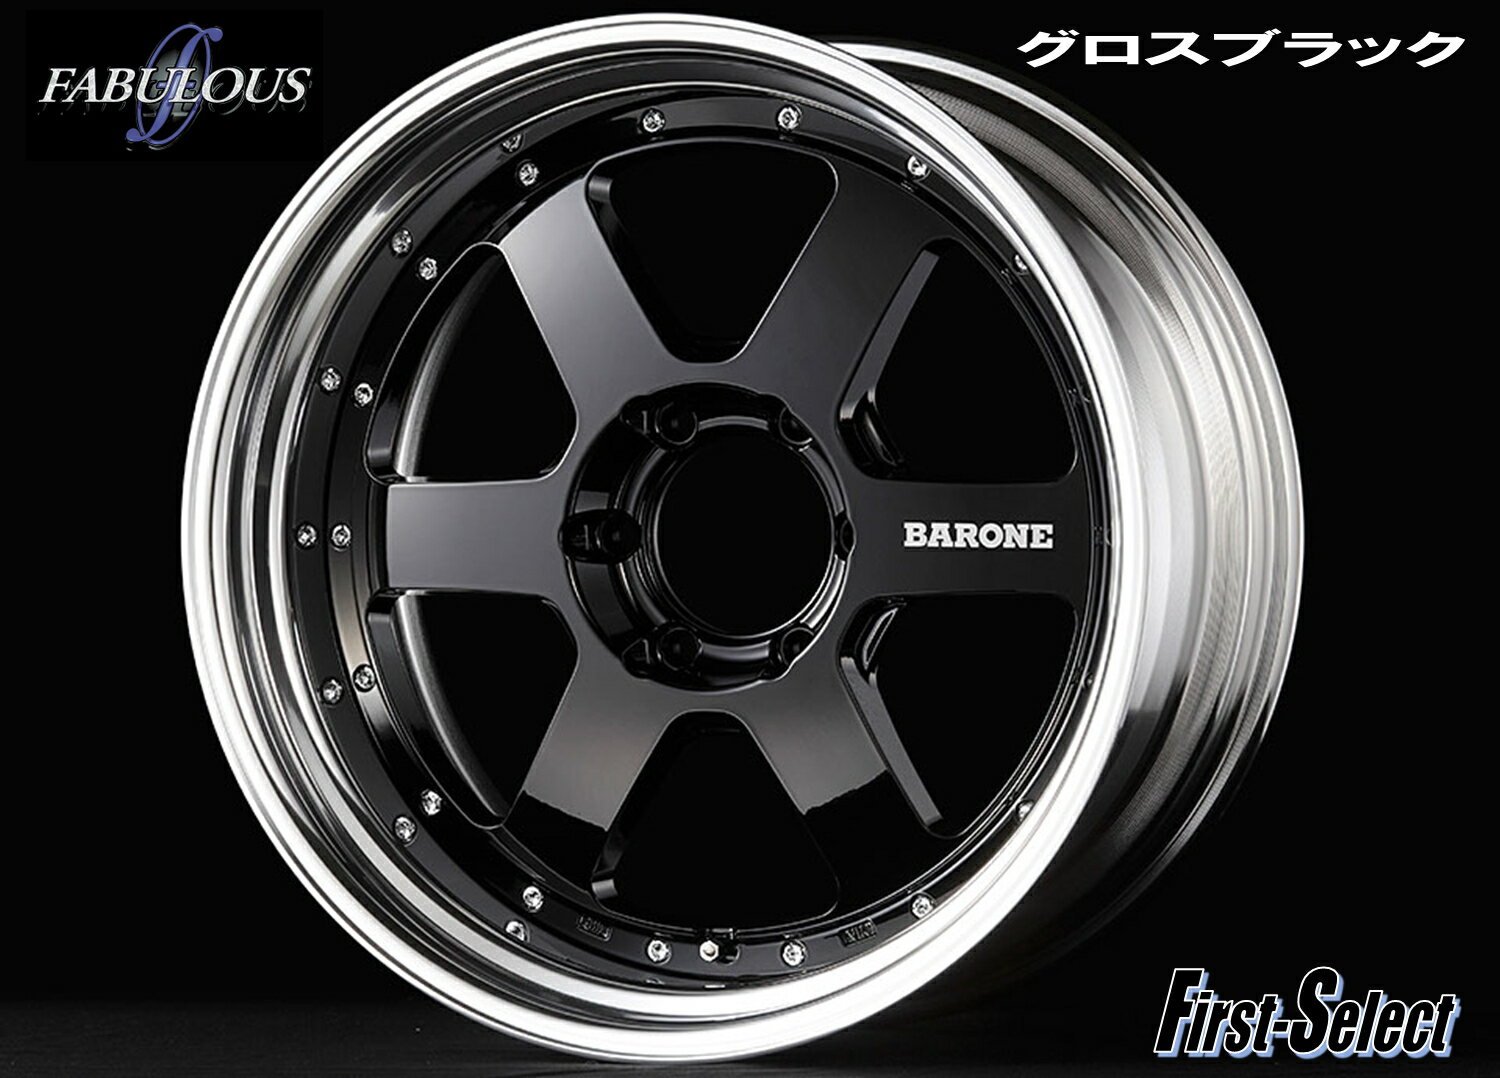 200系 ハイエース 深リム カスタムサイズFABULOUS BARONE RS-6 2Pグロスブラック19×9.0J 6H139.7+25特選輸入タイヤ19インチ 新品 タイヤ・ホイール